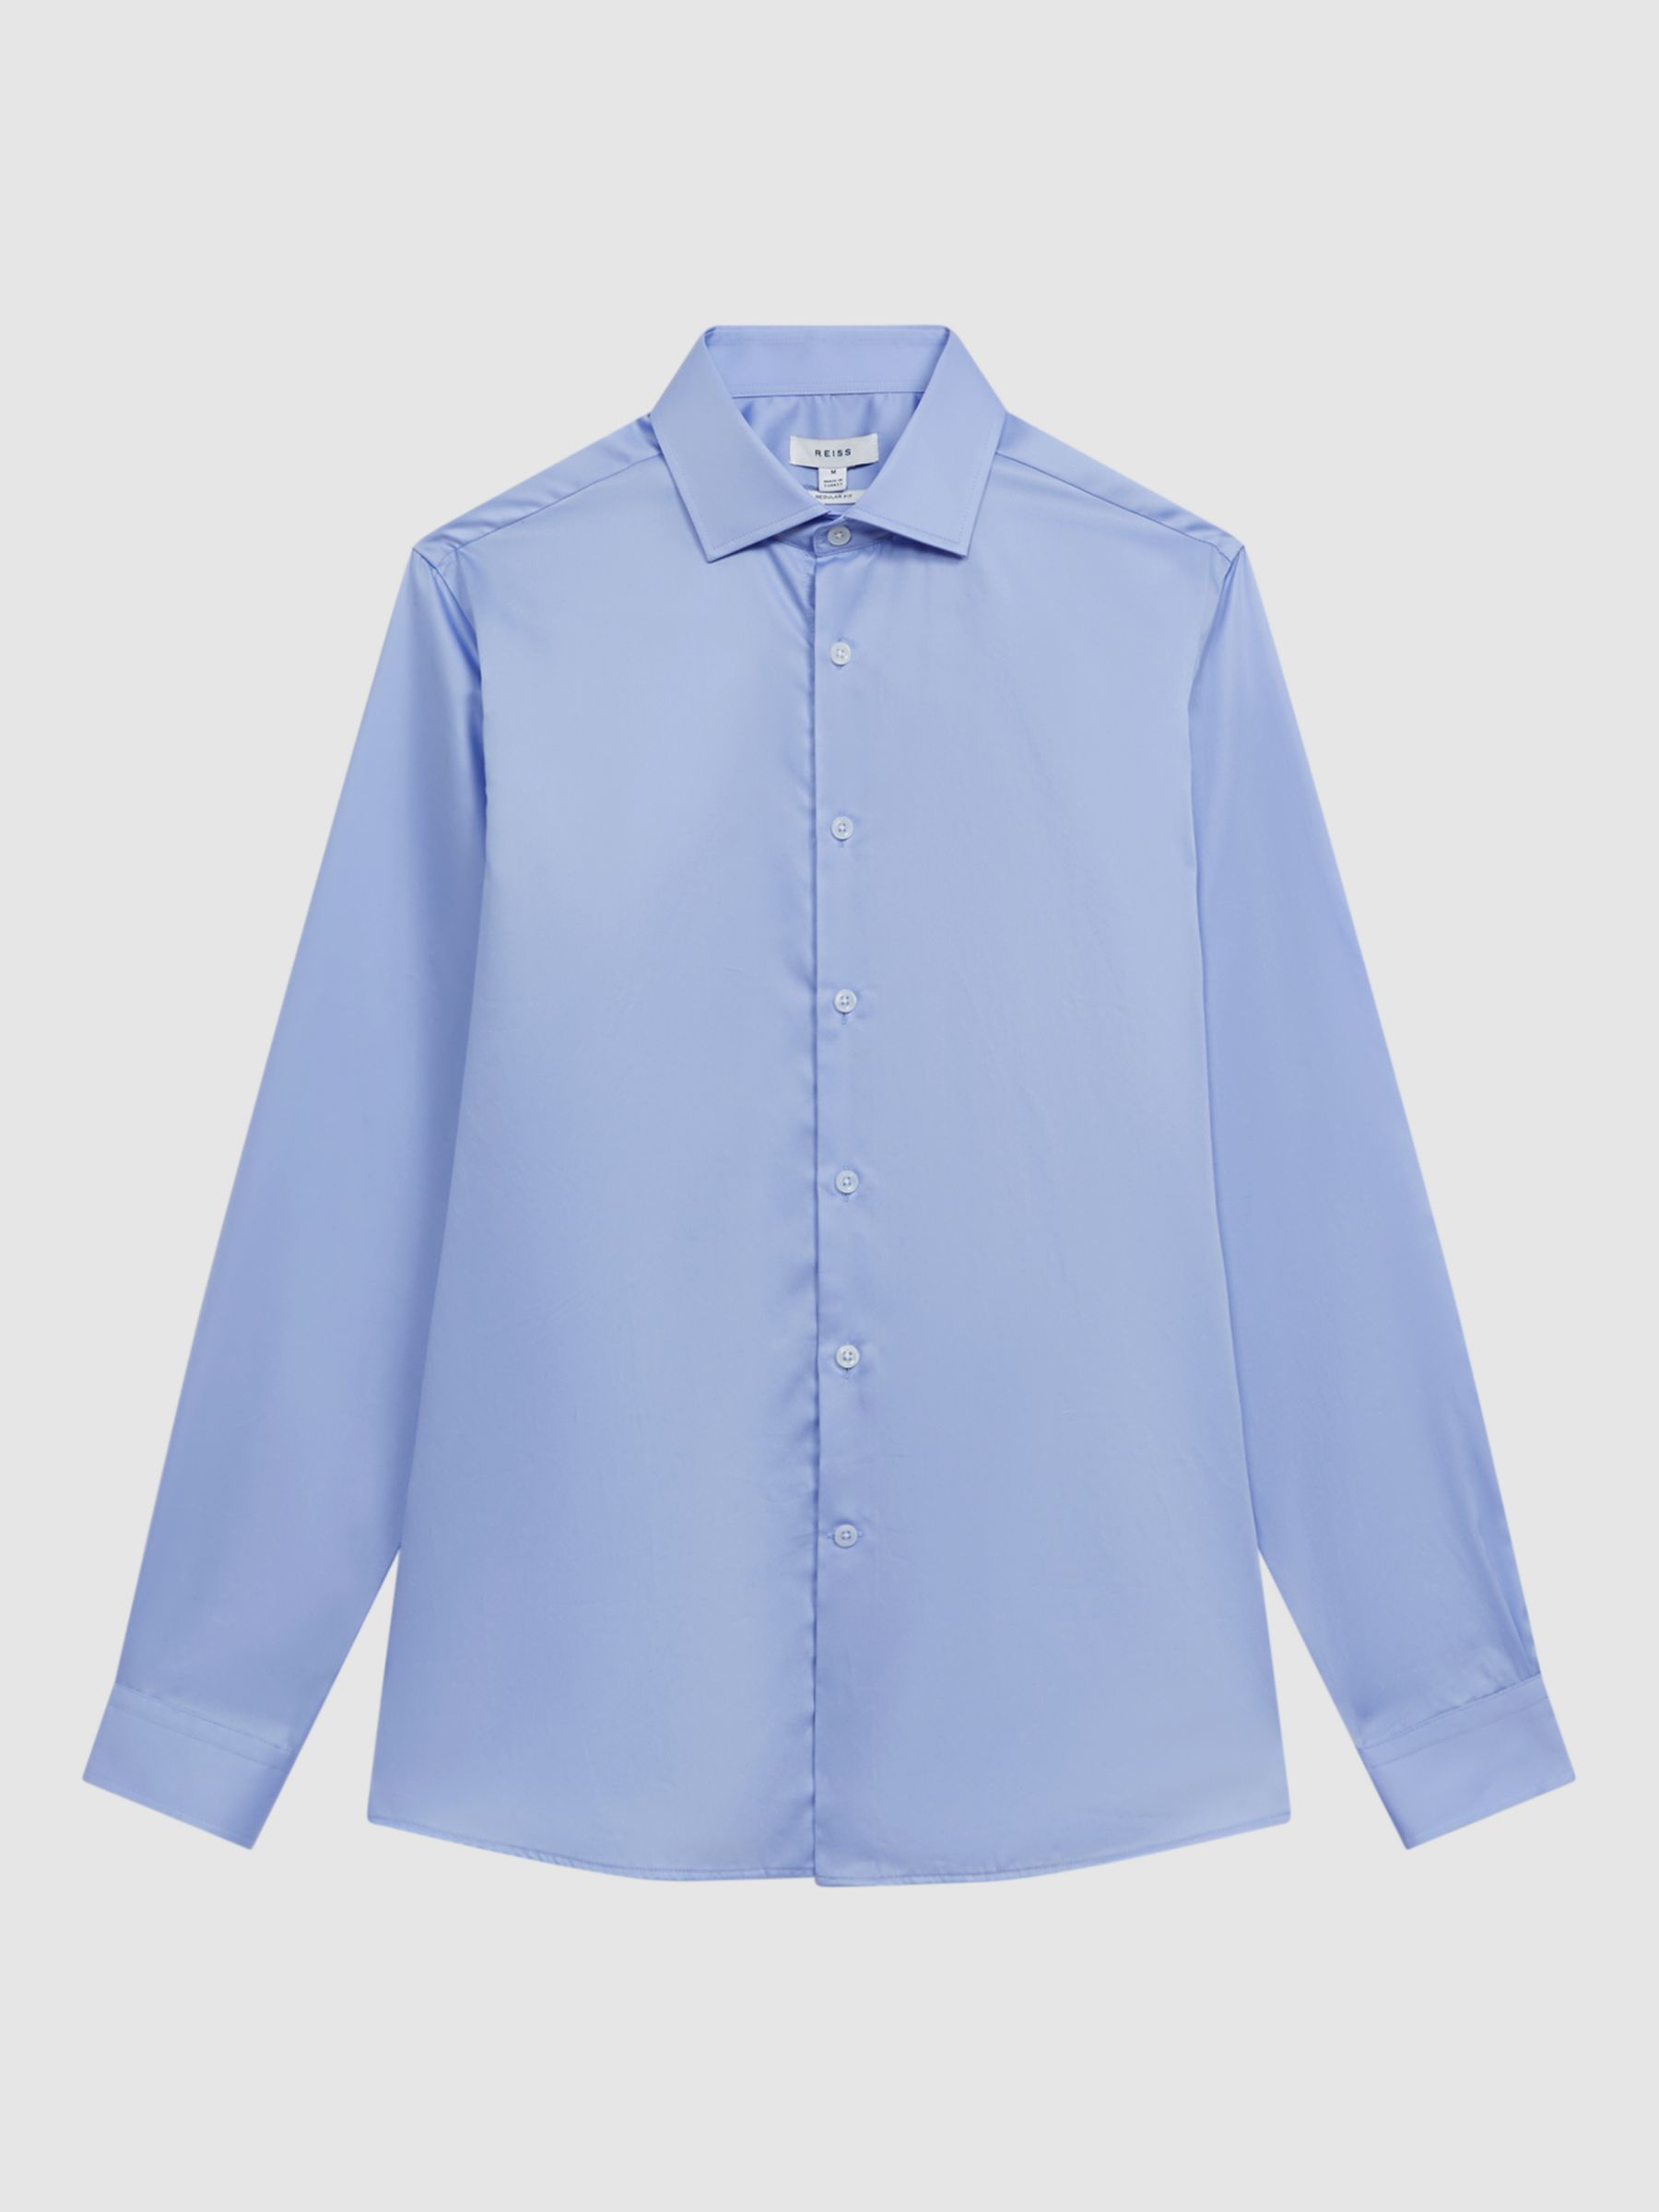 Reiss Remote Regular Fit Cotton Sateen Cutaway Collar Shirt, Mid Blue, XS